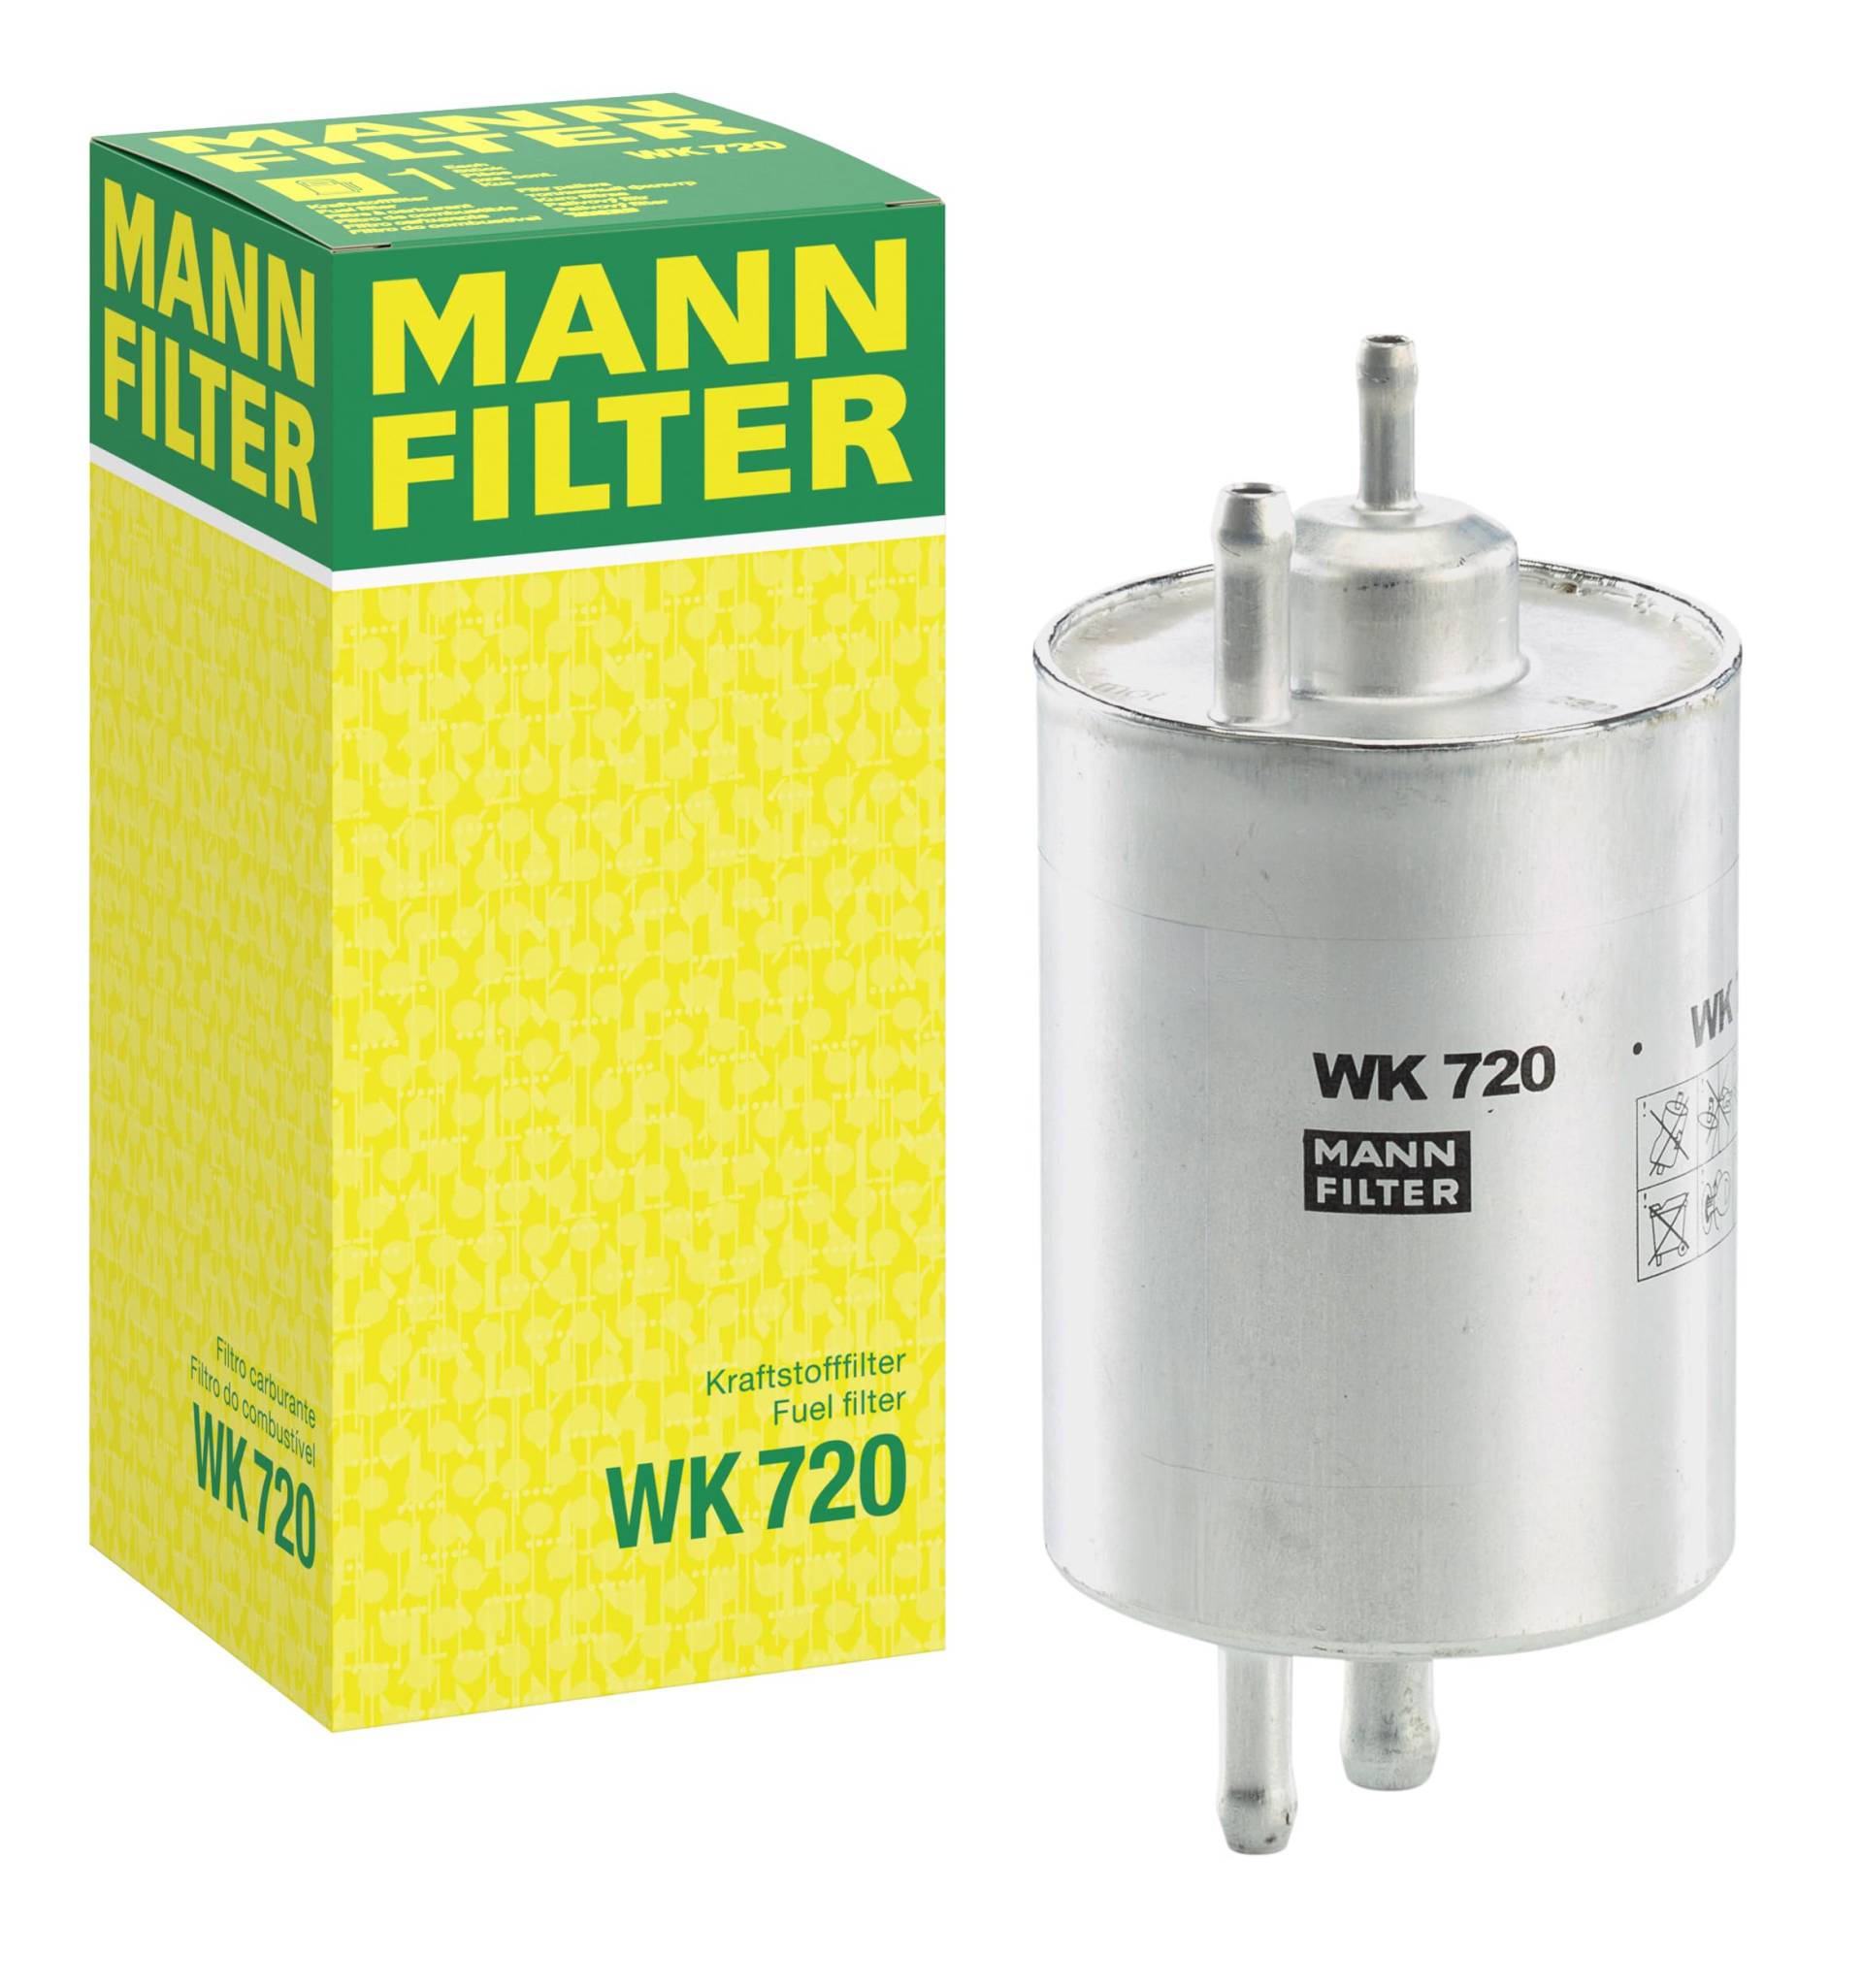 MANN-FILTER WK 720 Kraftstofffilter – Kraftstofffilter Satz mit integriertem Druckregler 3,8 bar – Für PKW von MANN-FILTER